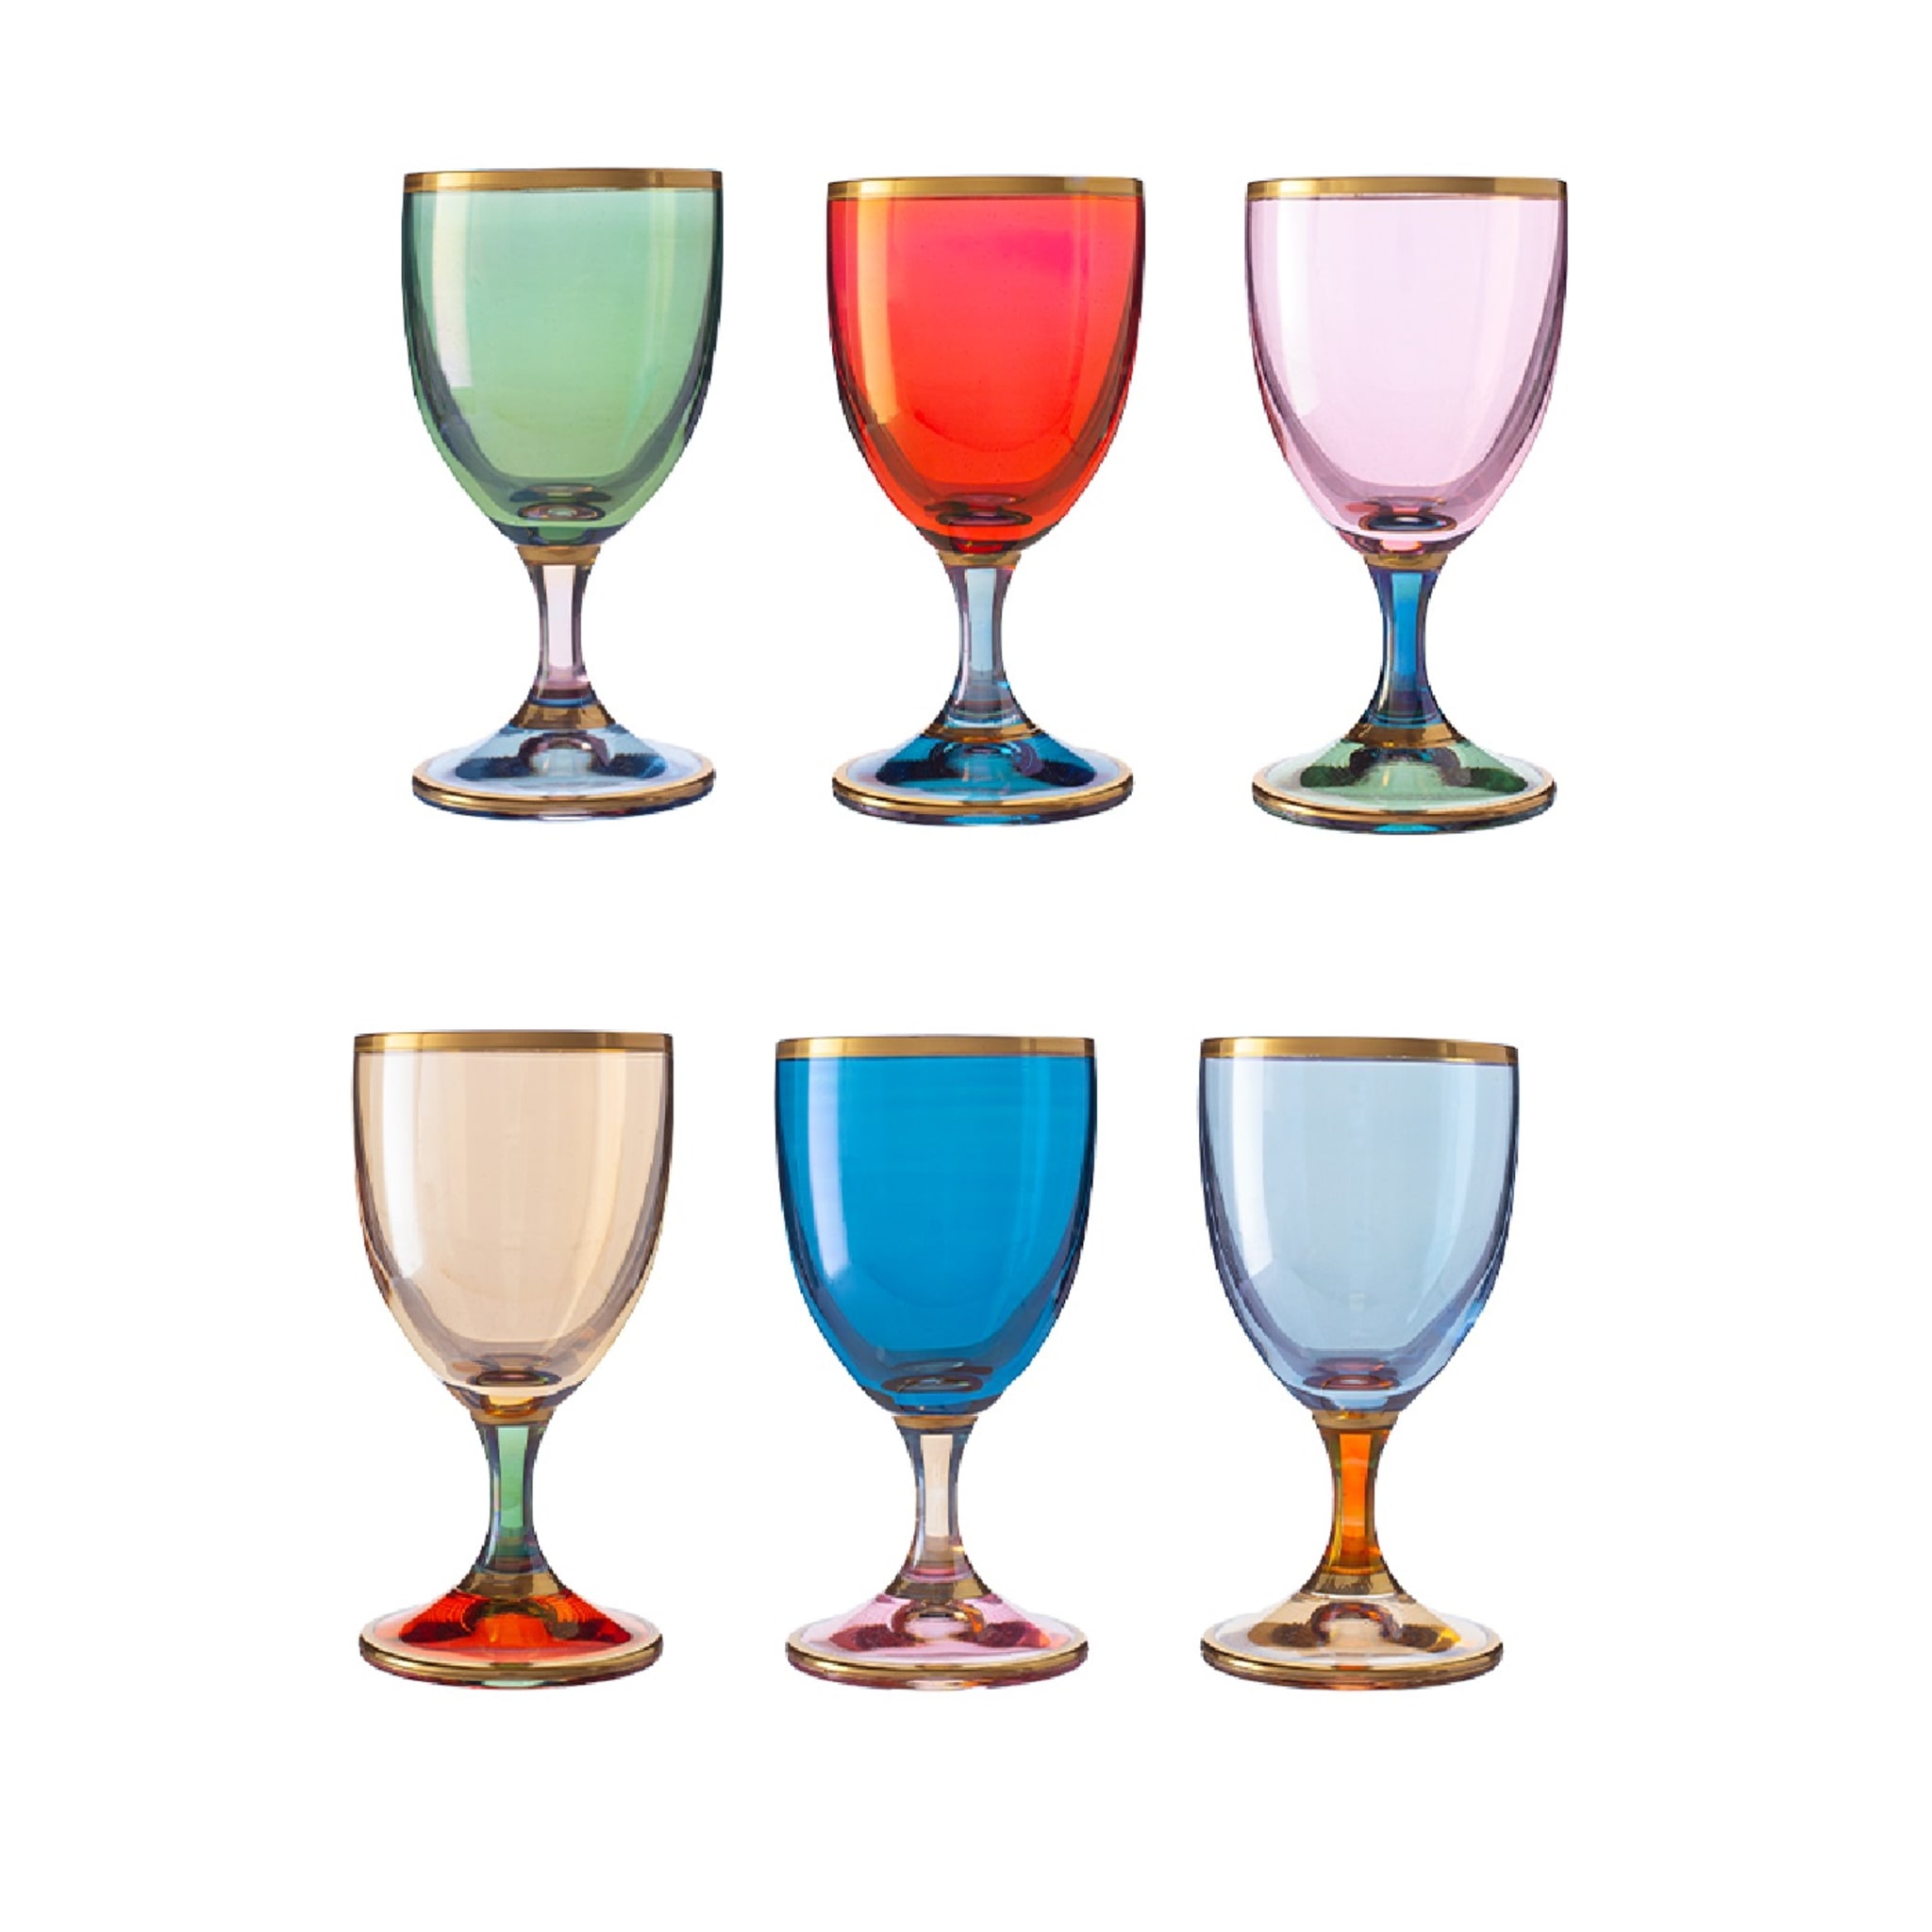 Polychrome Set of 6 Liquor Glasses - Main view